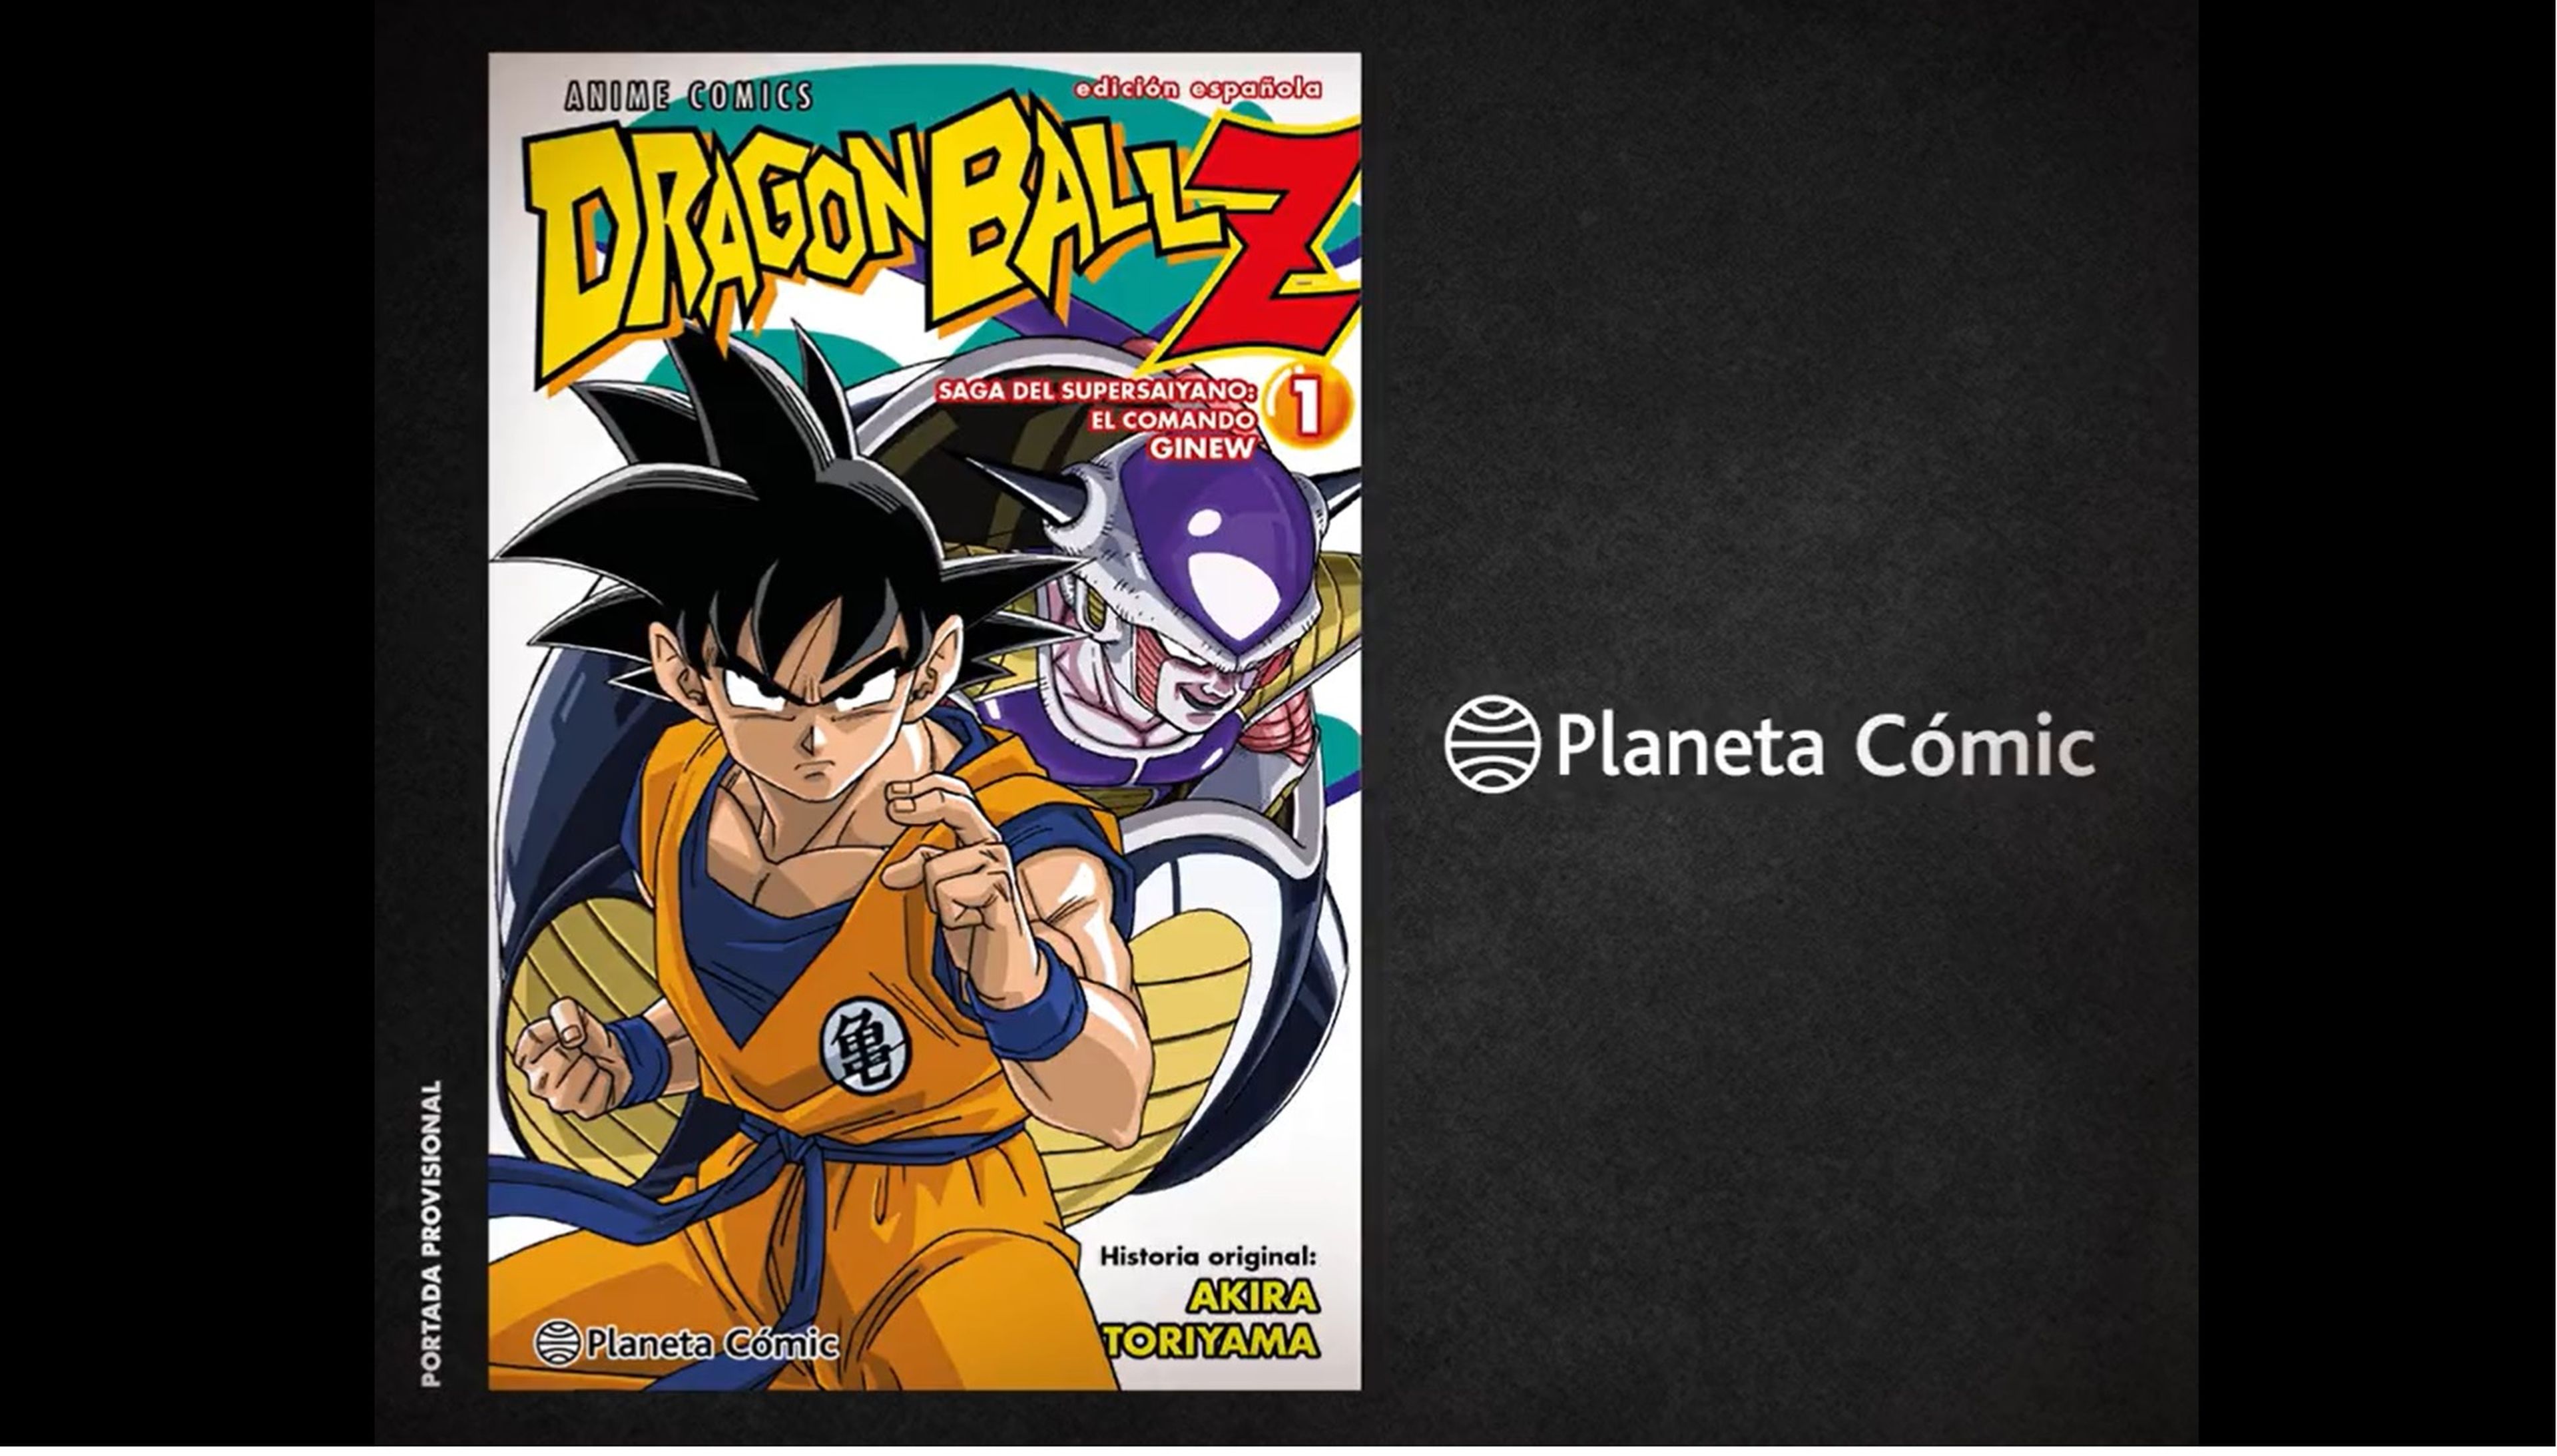 Dragon Ball Z - Planeta Cómic confirma el mes de lanzamiento de los ansiados Anime Cómics de la Saga de Namek. ¡Años esperándolos!